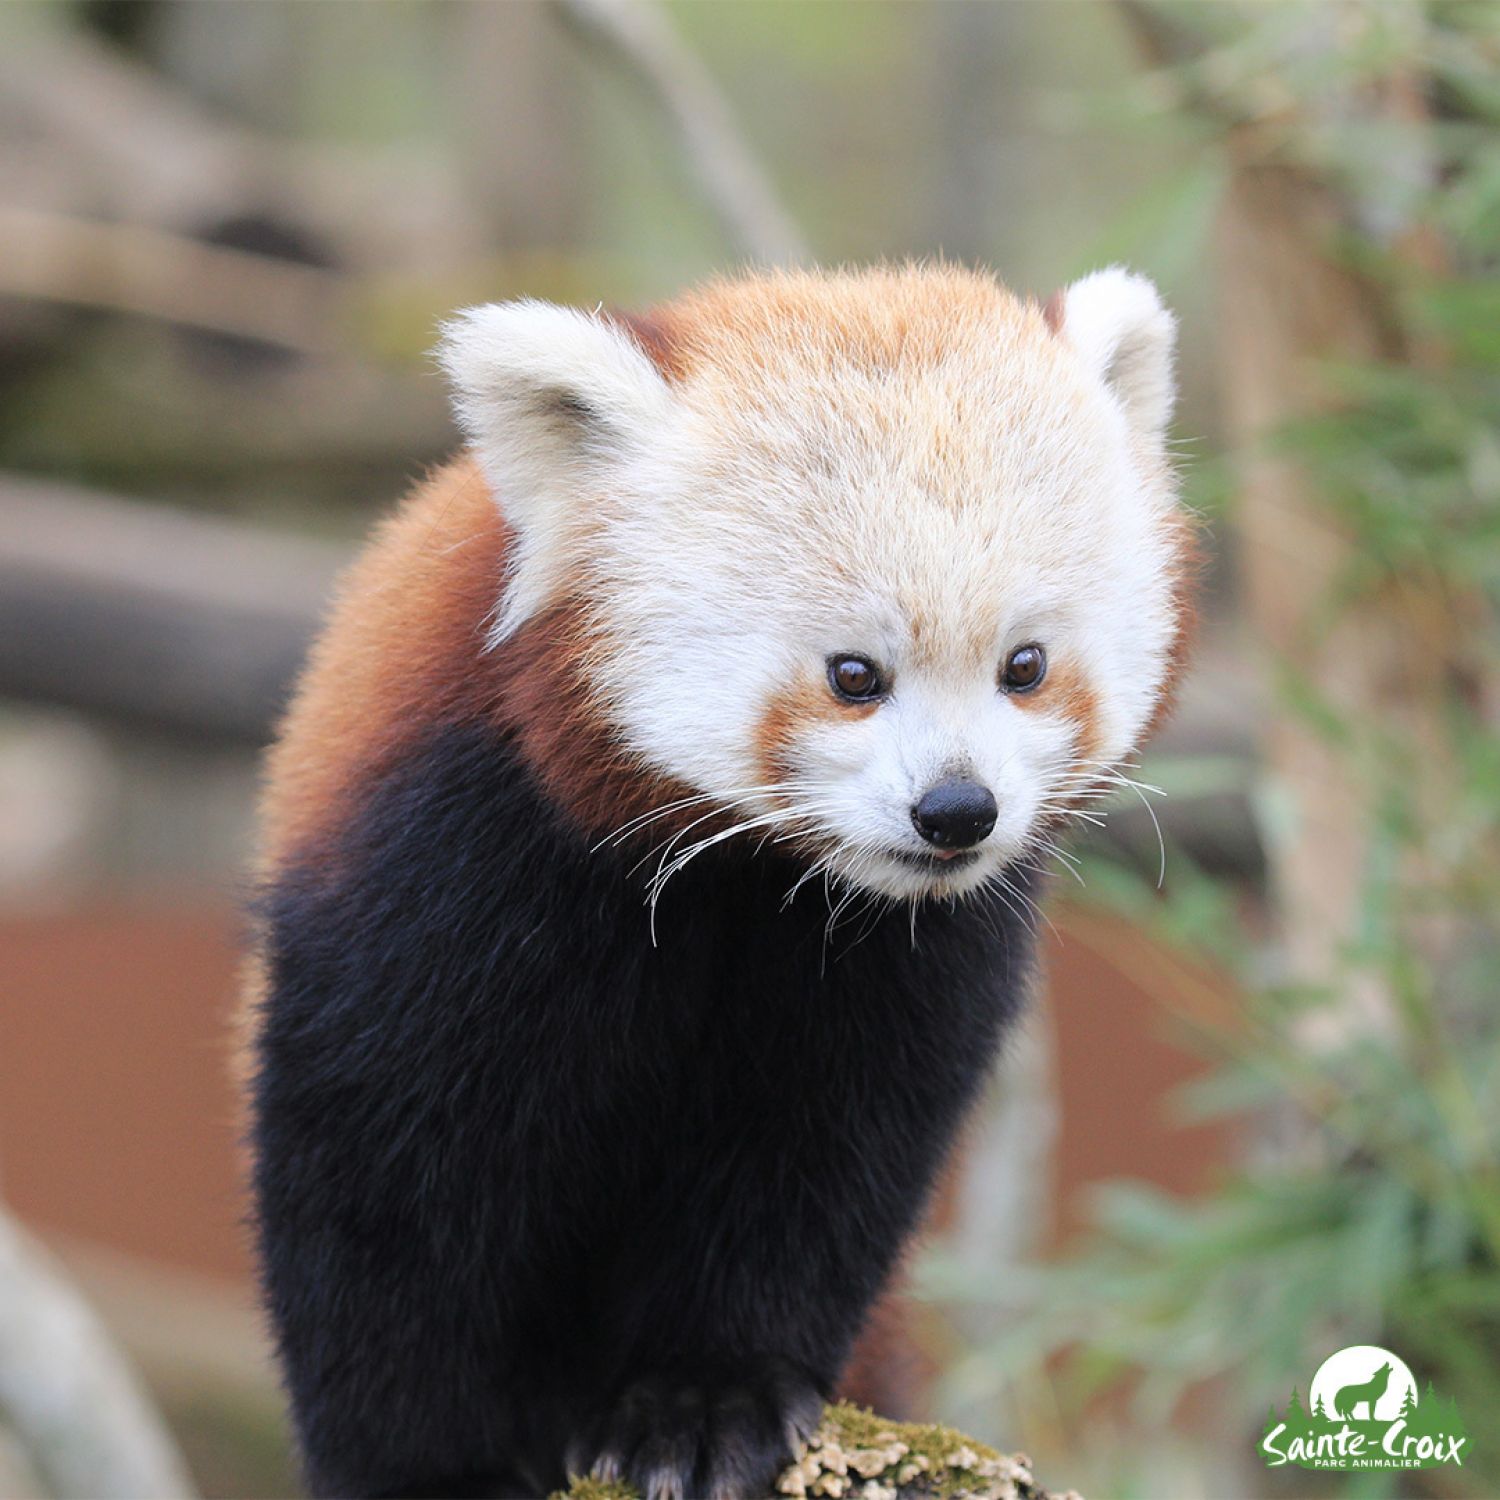 Le parc animalier de Sainte-Croix rouvre samedi avec Zaya, le nouveau panda roux 